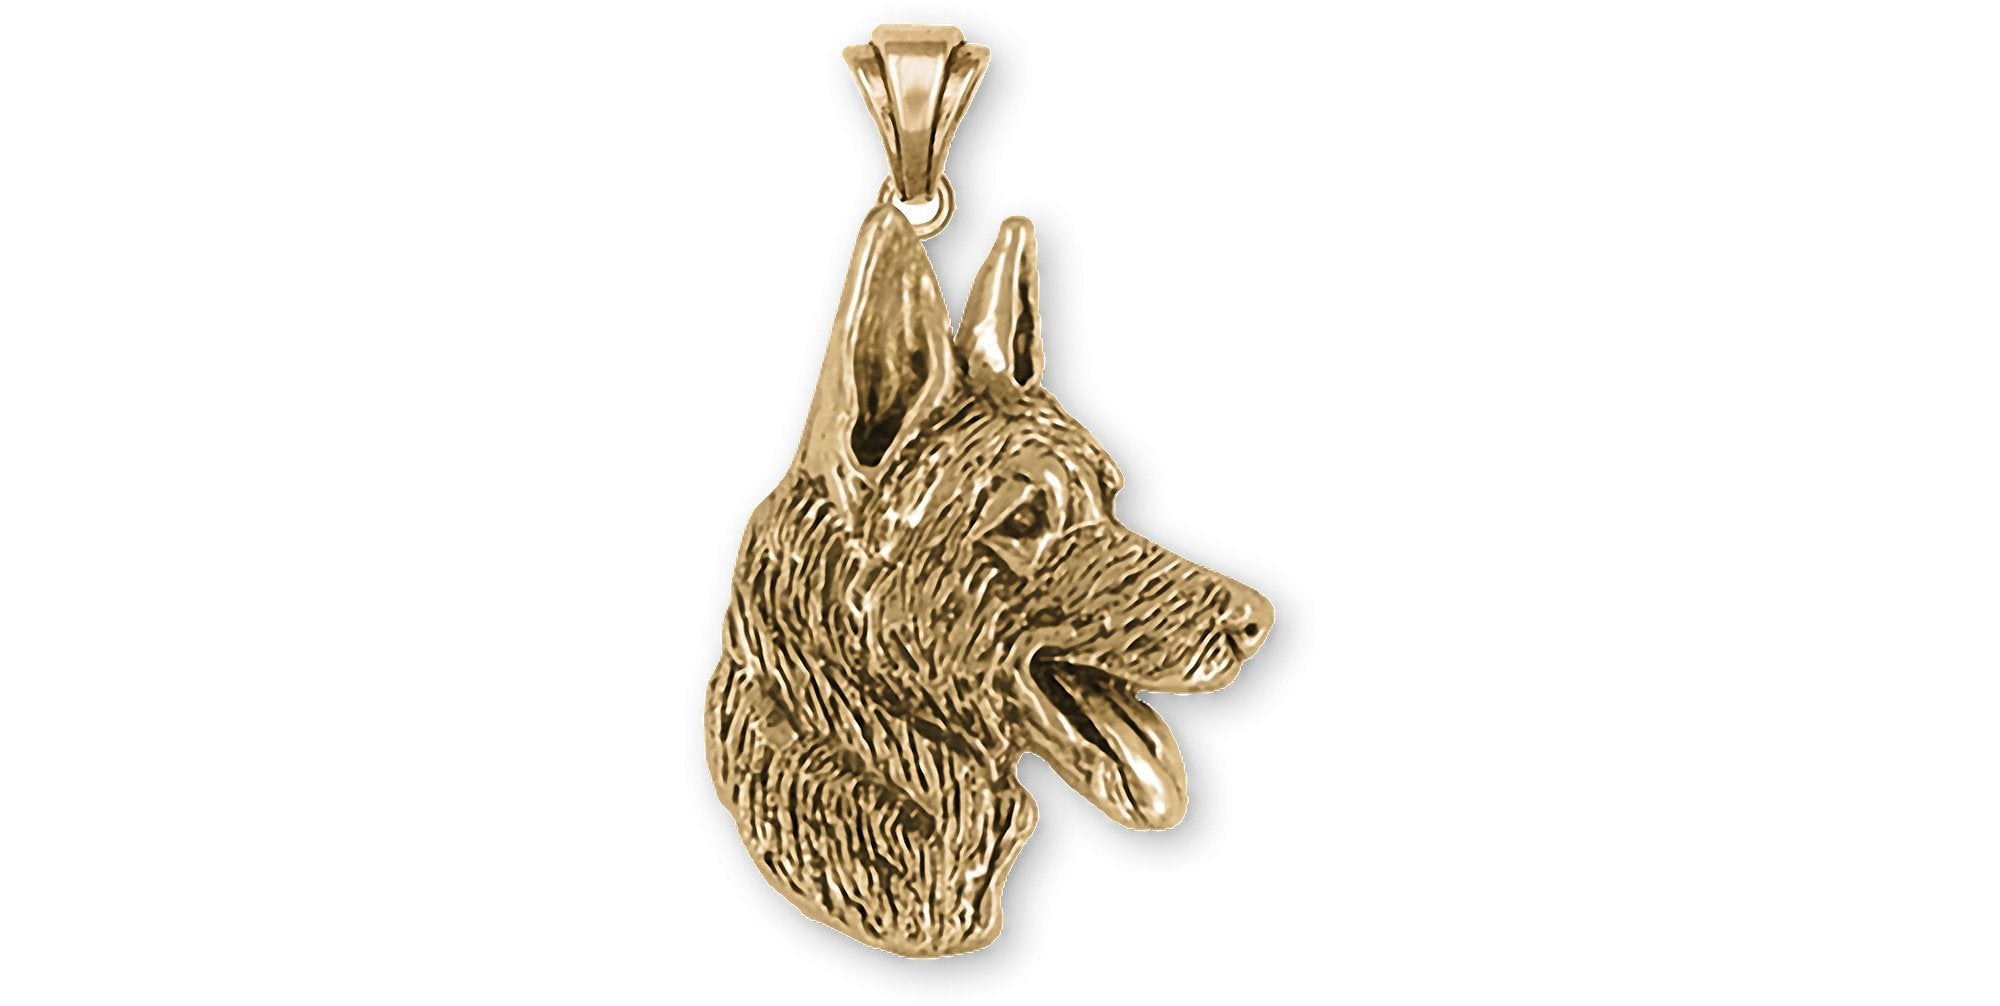 German Shepherd Dog Silver Pendant